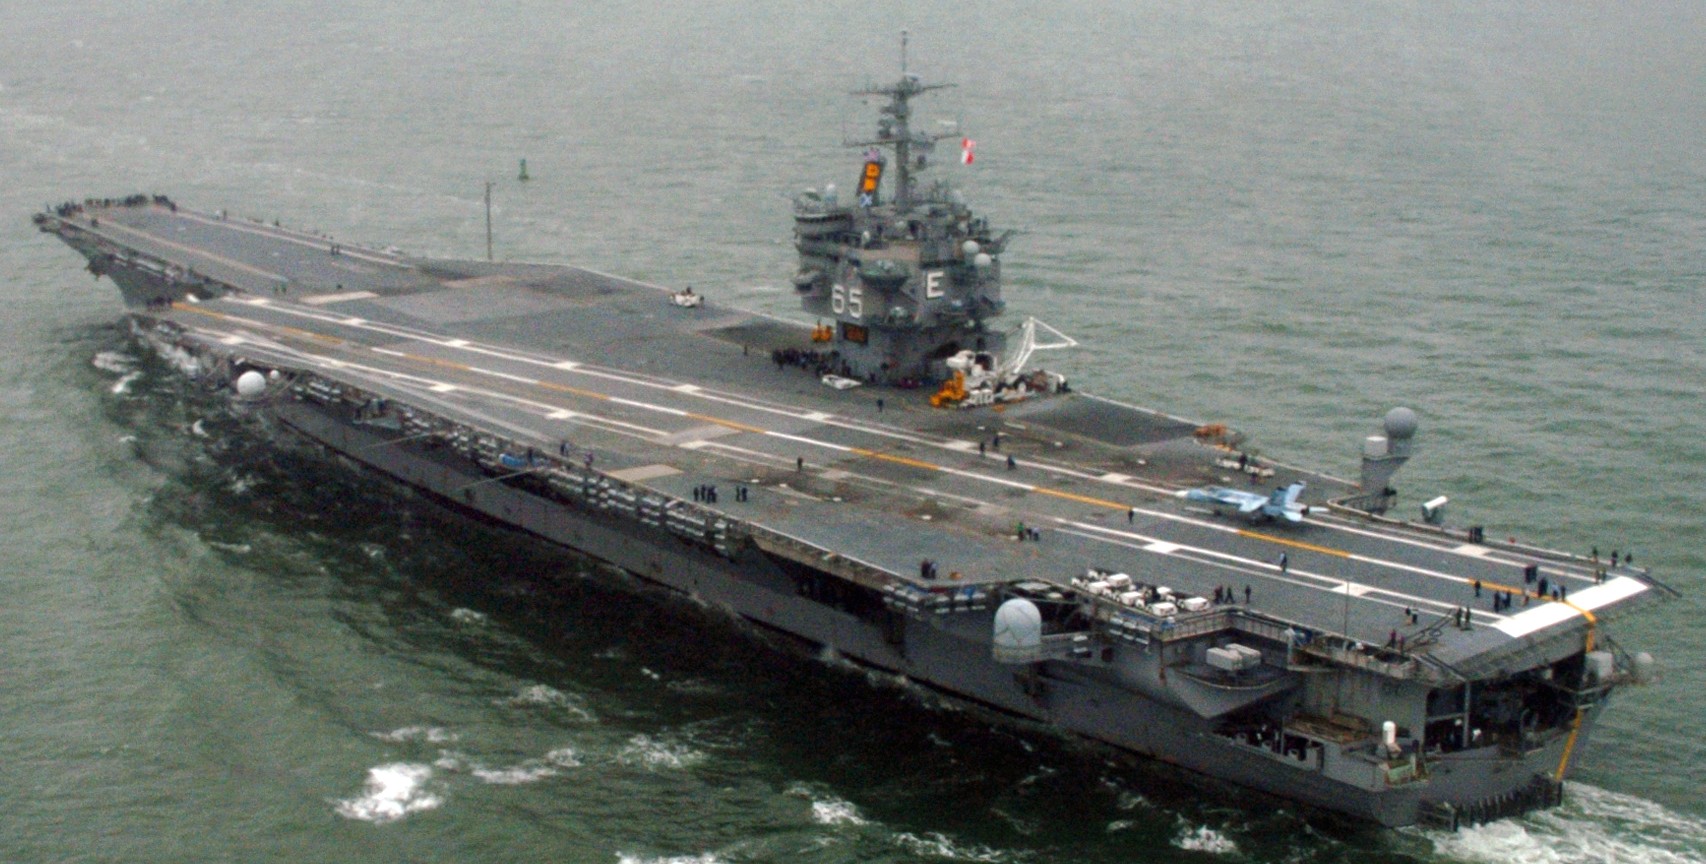 cvn-65 uss enterprise aircraft carrier us navy 54